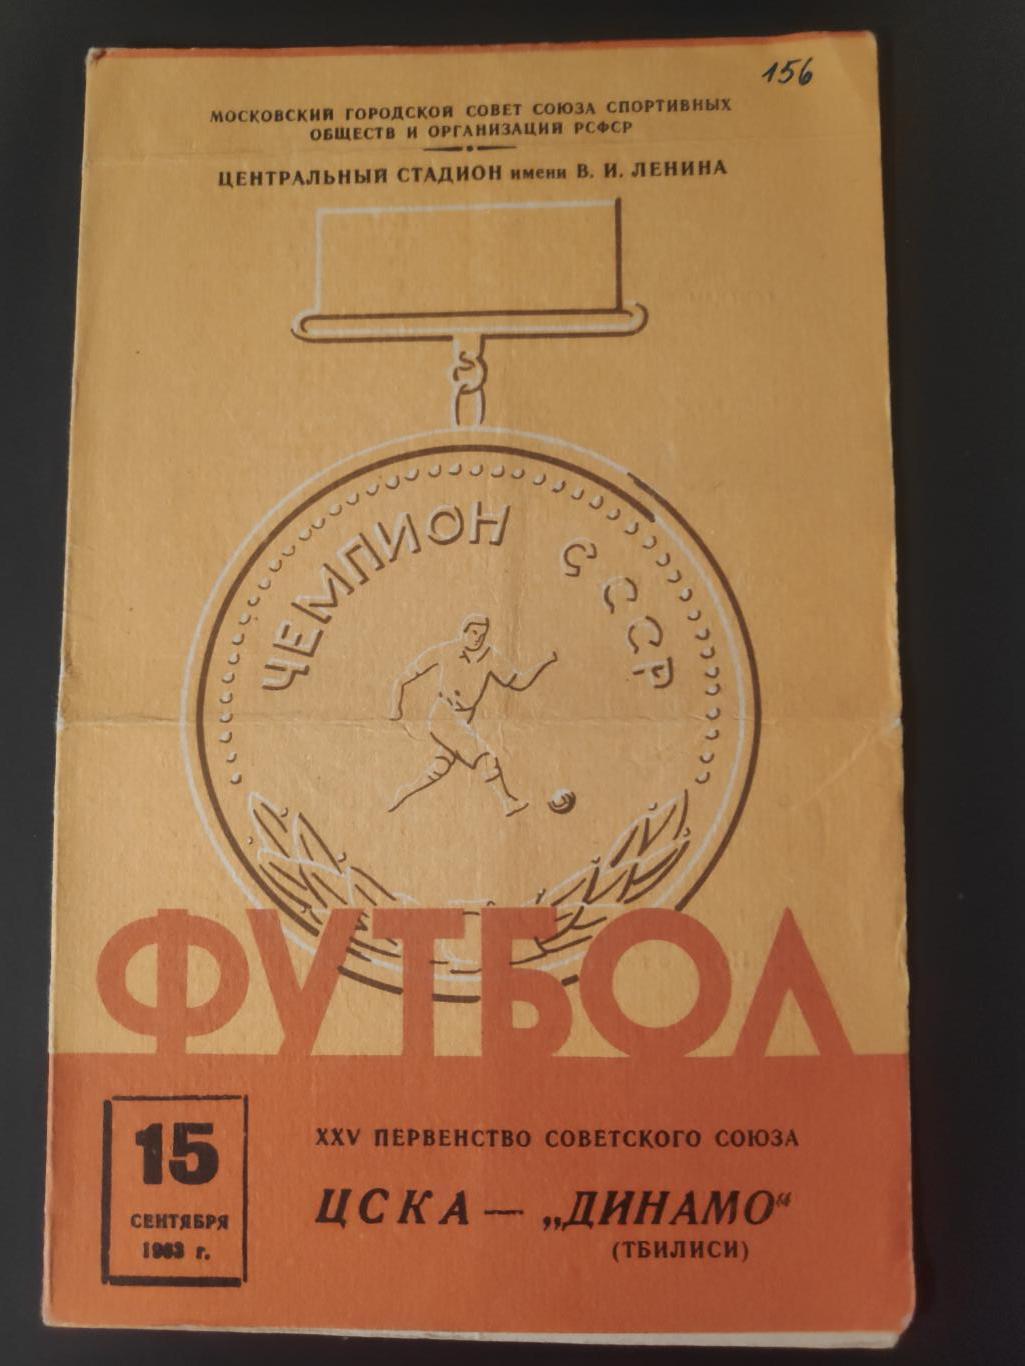 ЦСКА-Динамо (Тбилиси) 15.09.1963г.